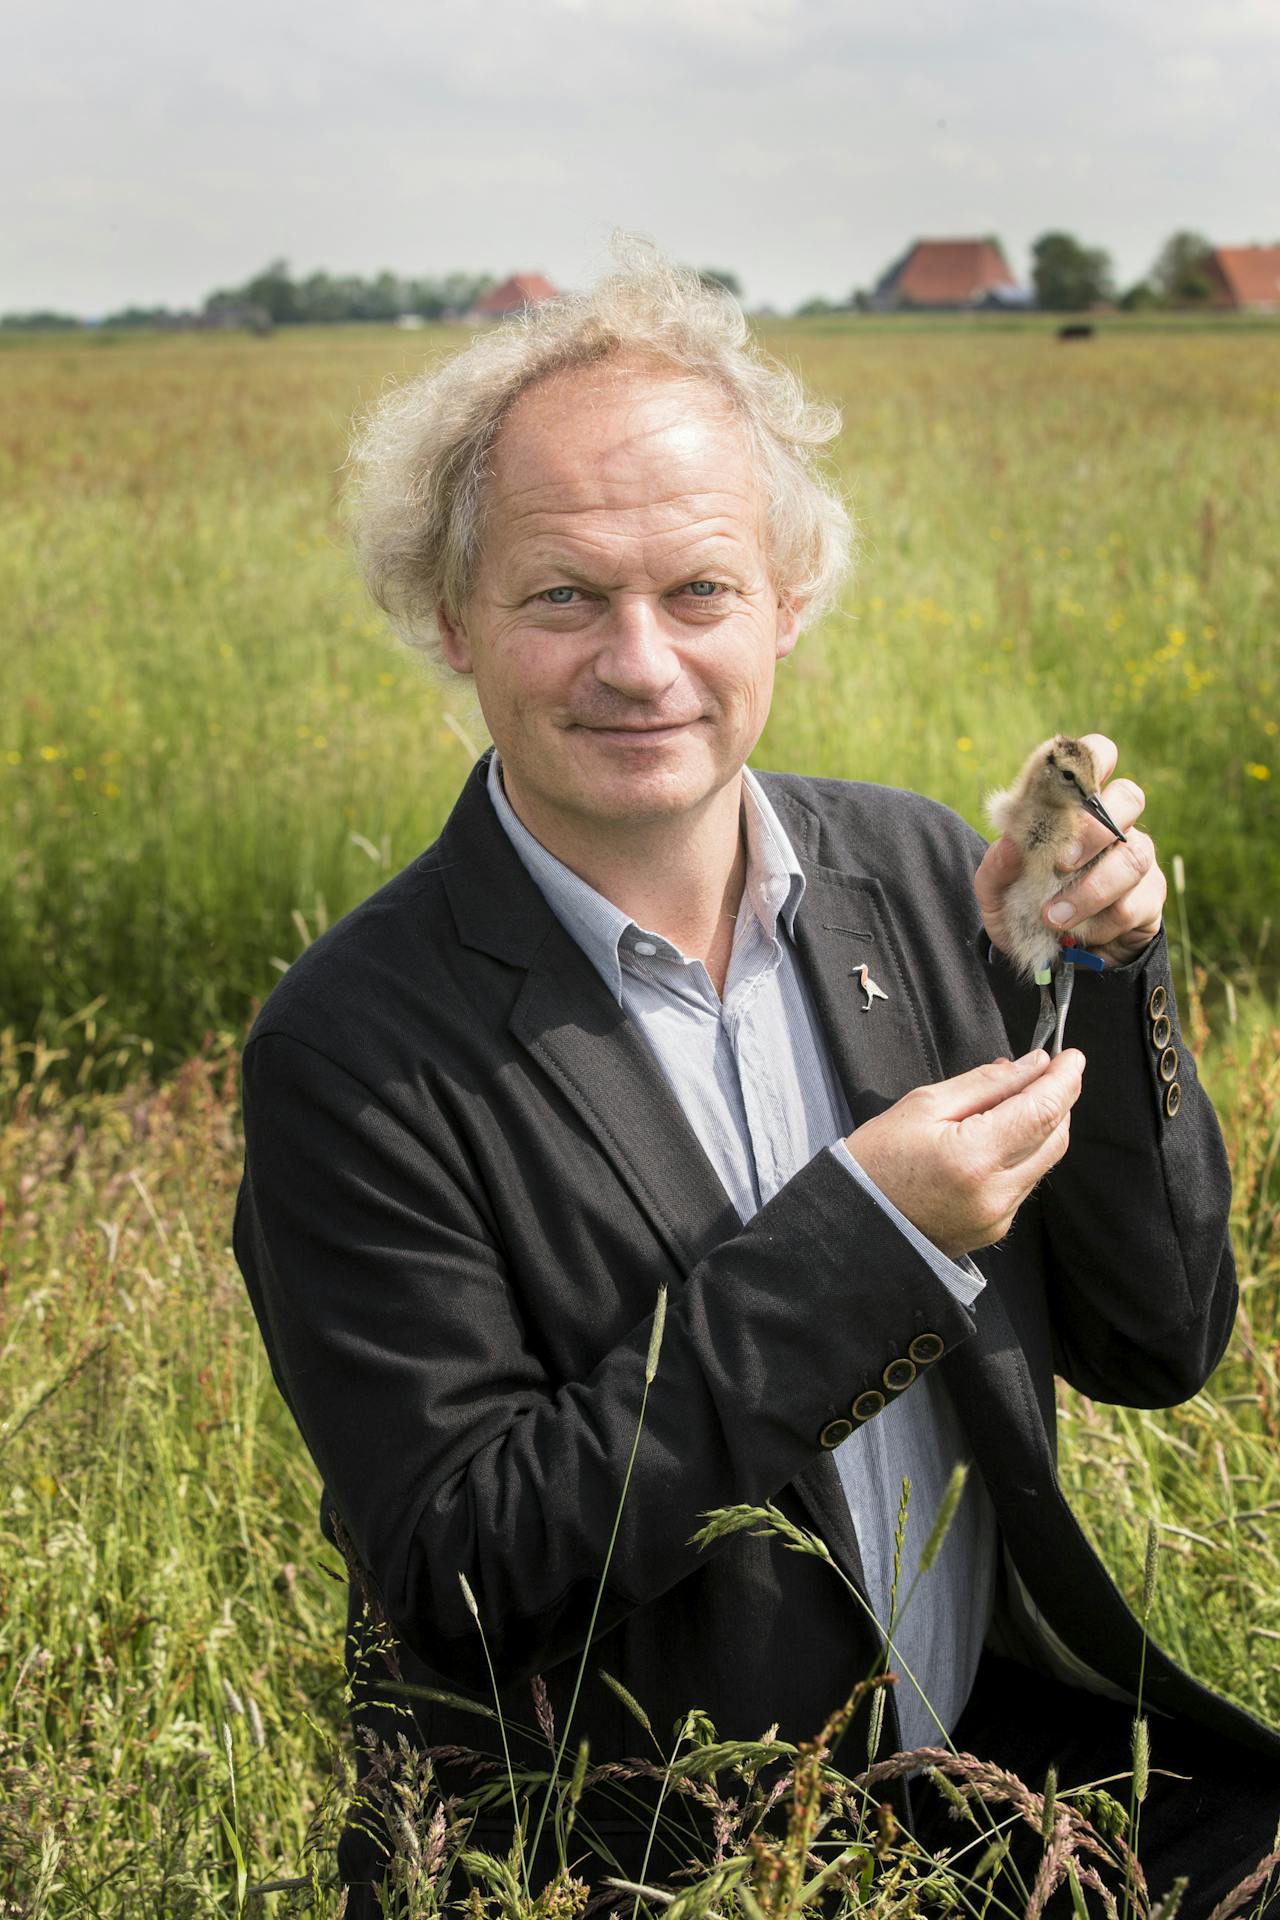 Een kleurenfoto van bioloog Theunis Piersma. Hij staat in een weiland en heeft een trekvogel in zijn hand.